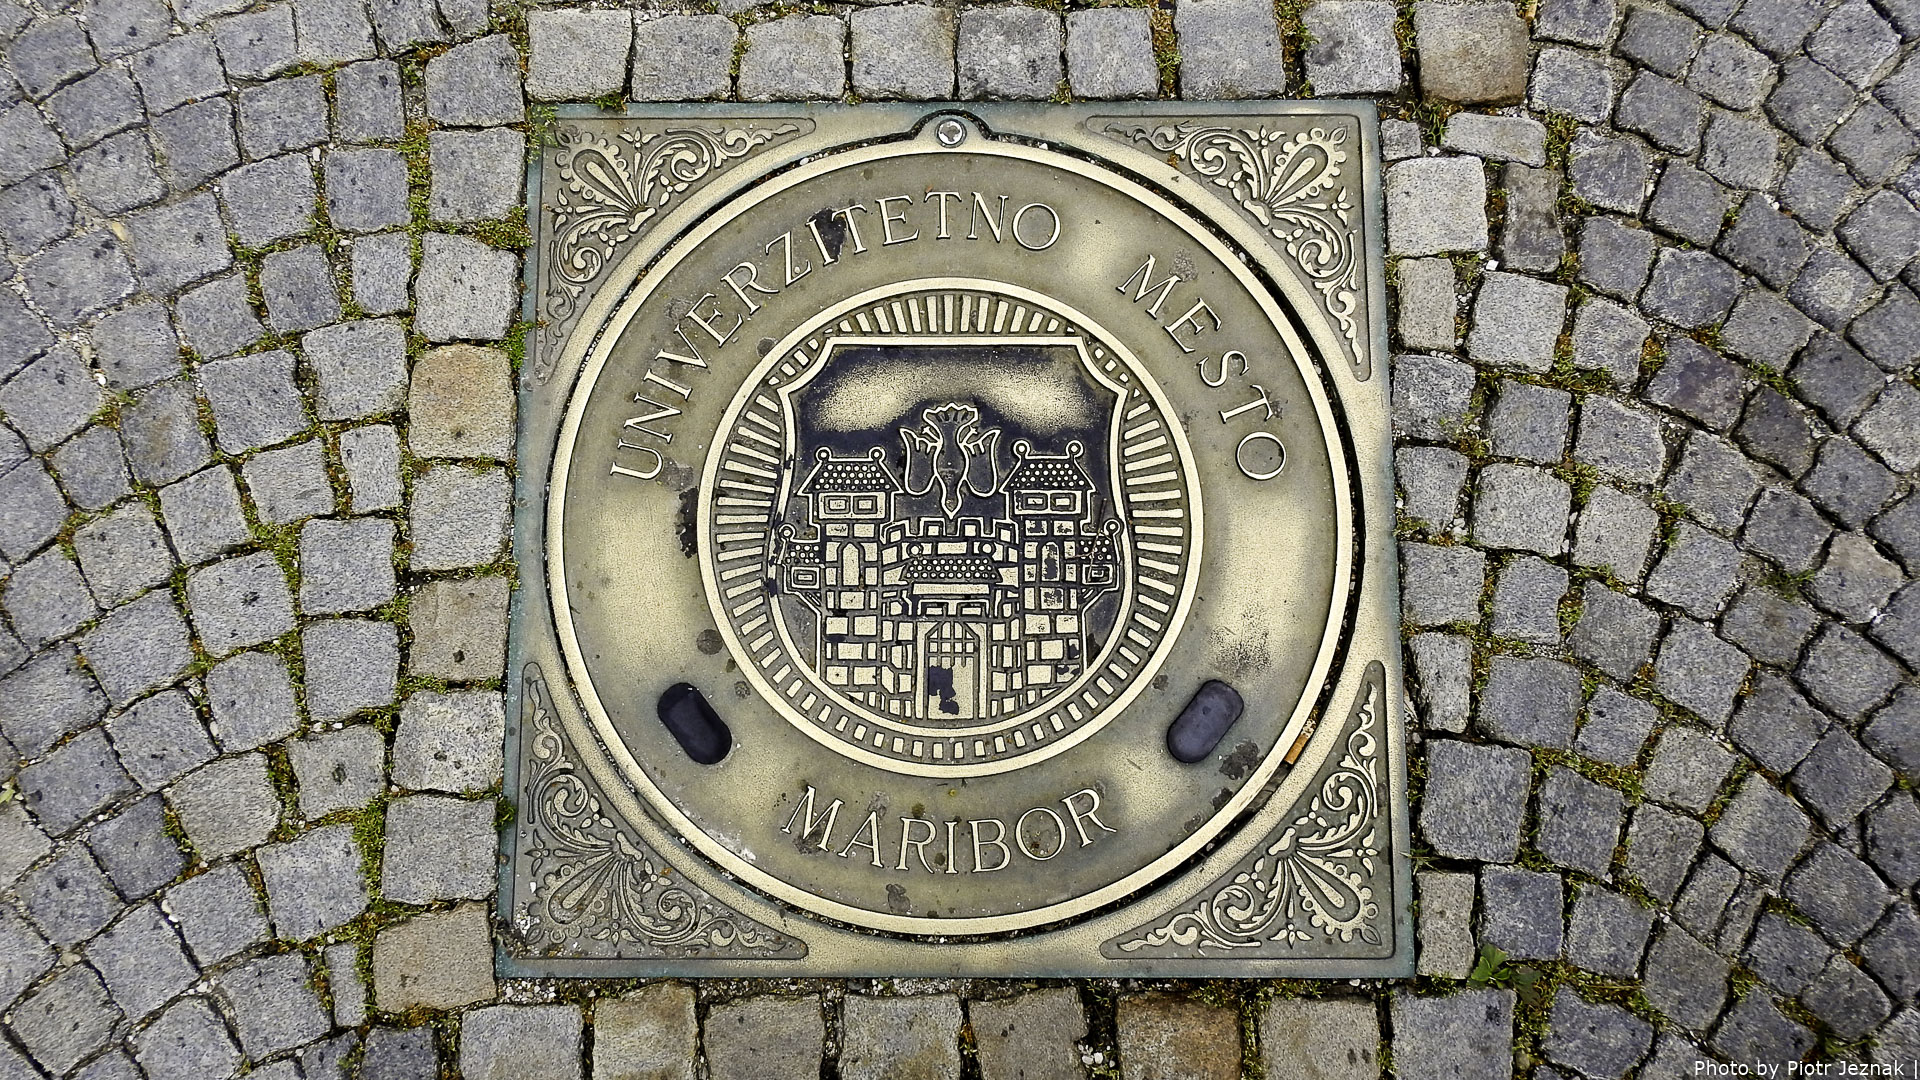 Manhole cover in Maribor